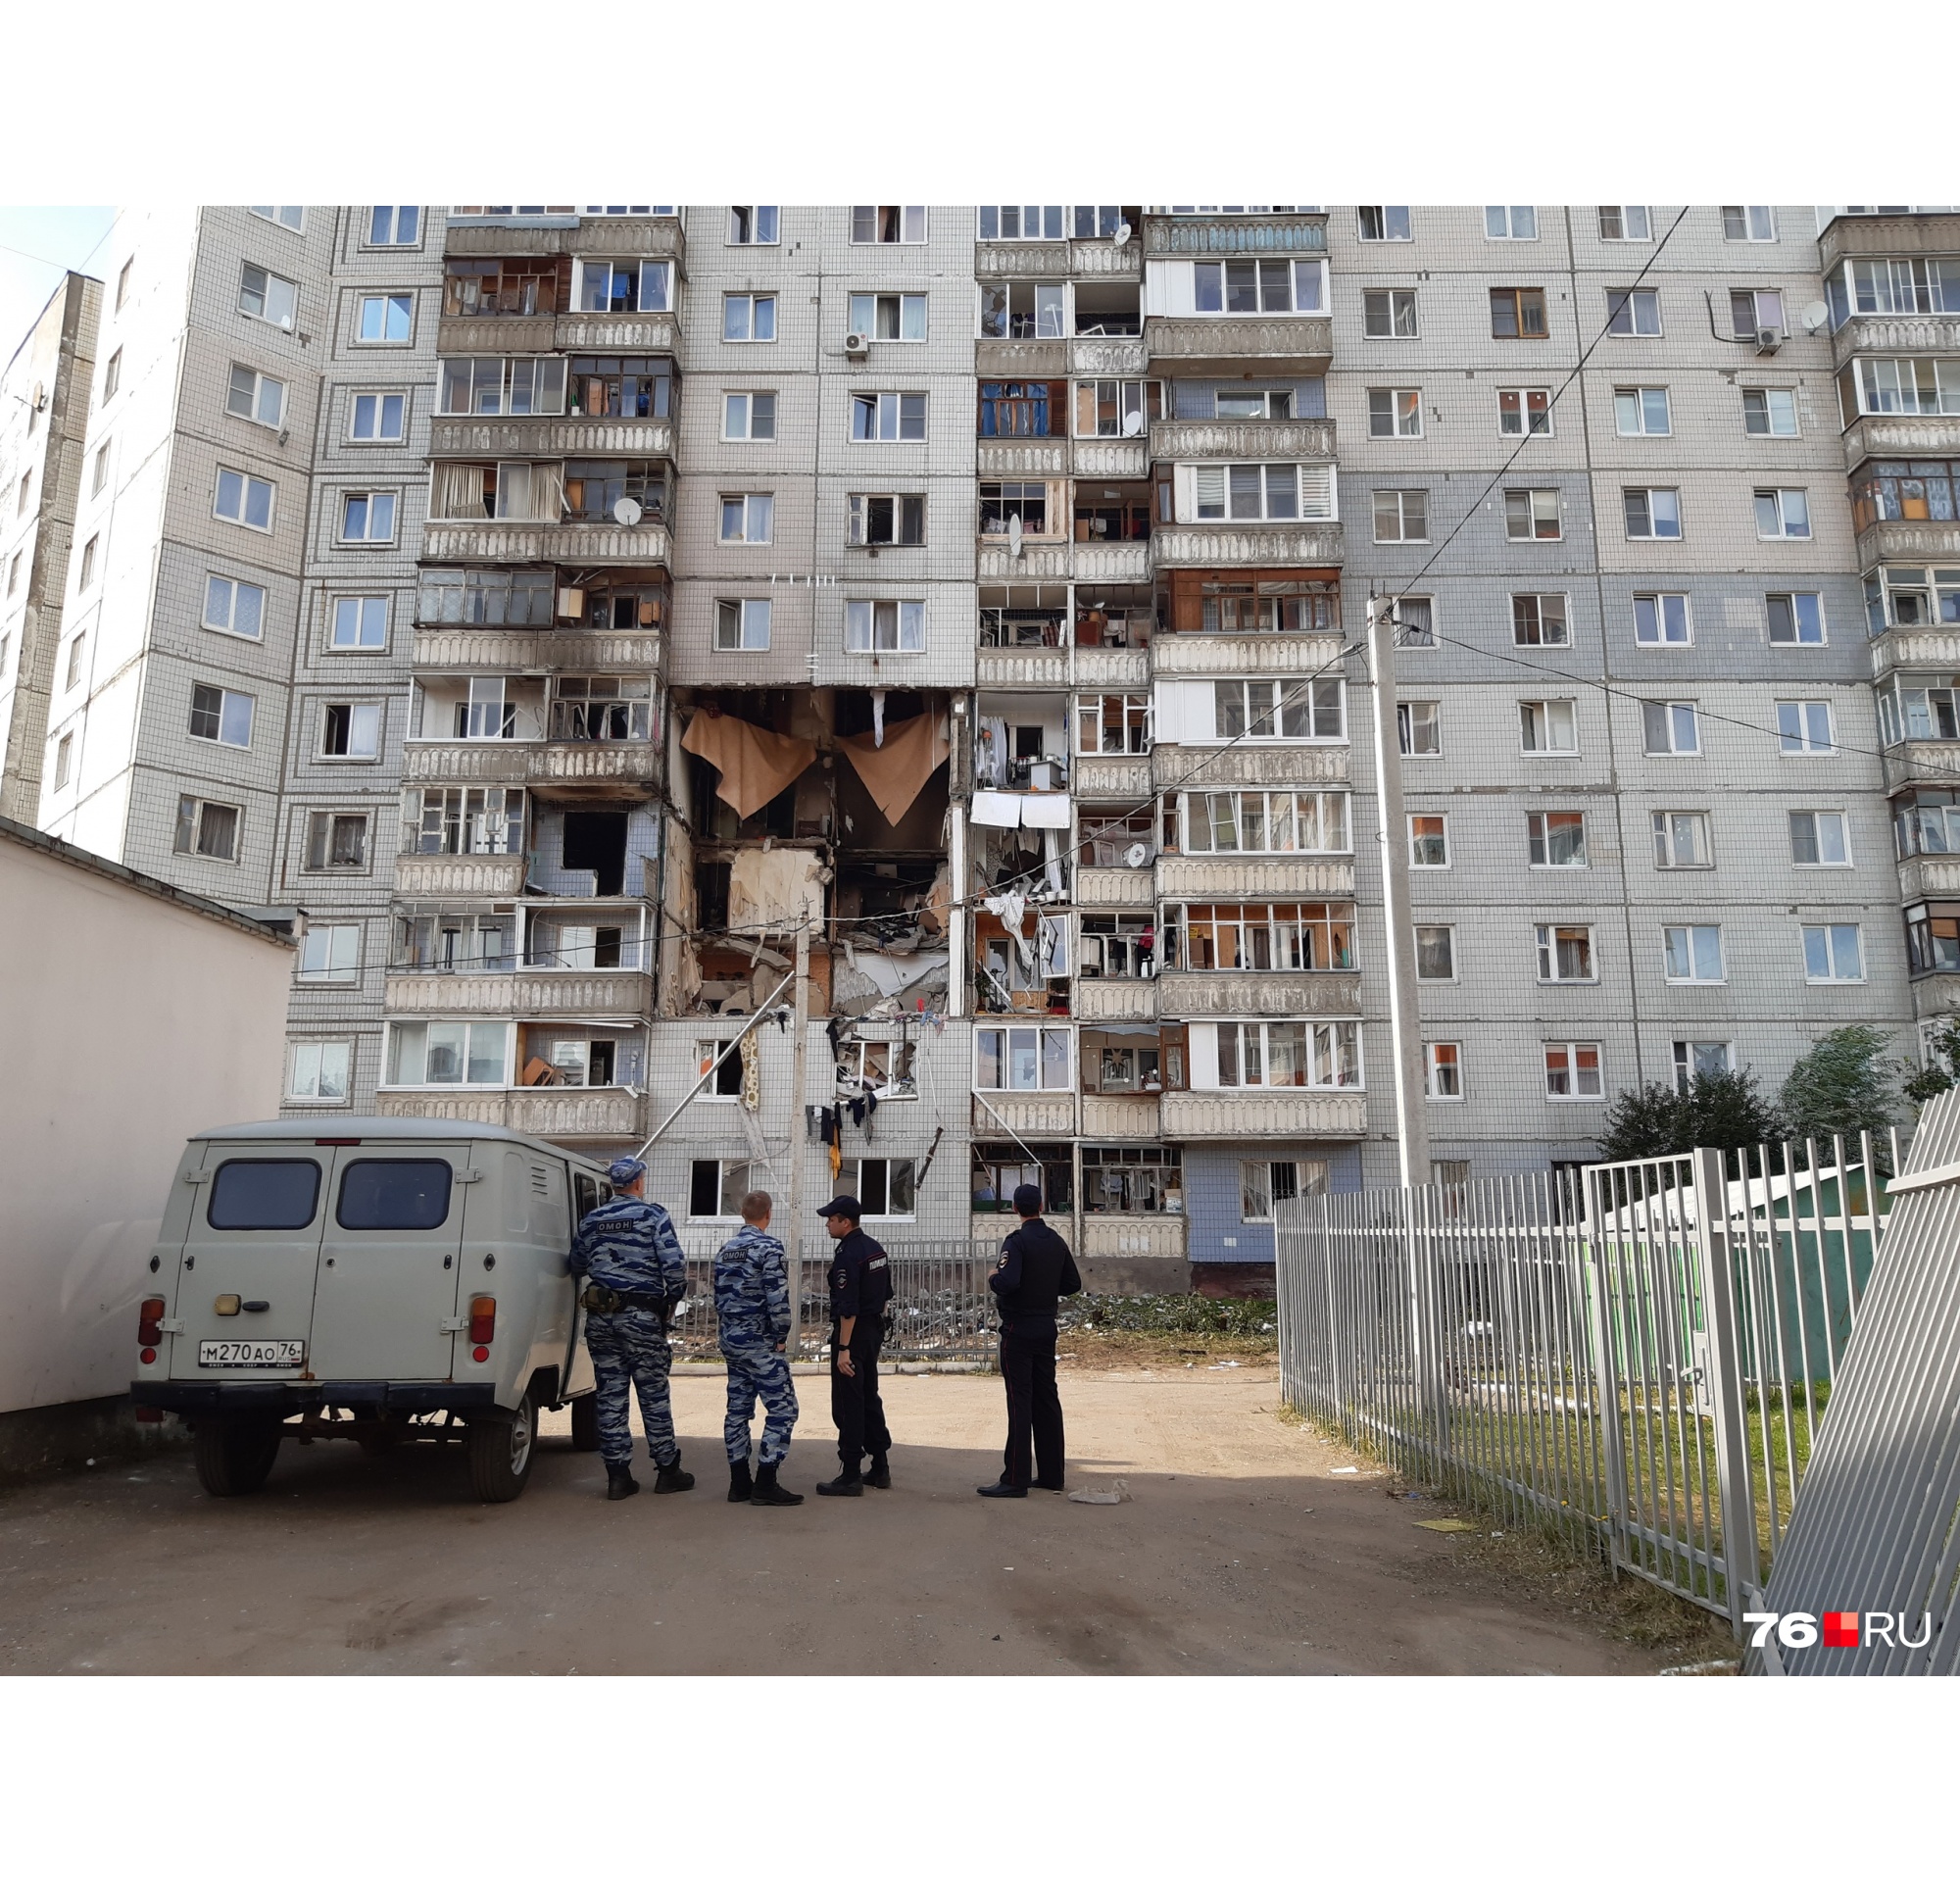 Немного денег и вещей: что получат жильцы взорвавшегося дома в Ярославле